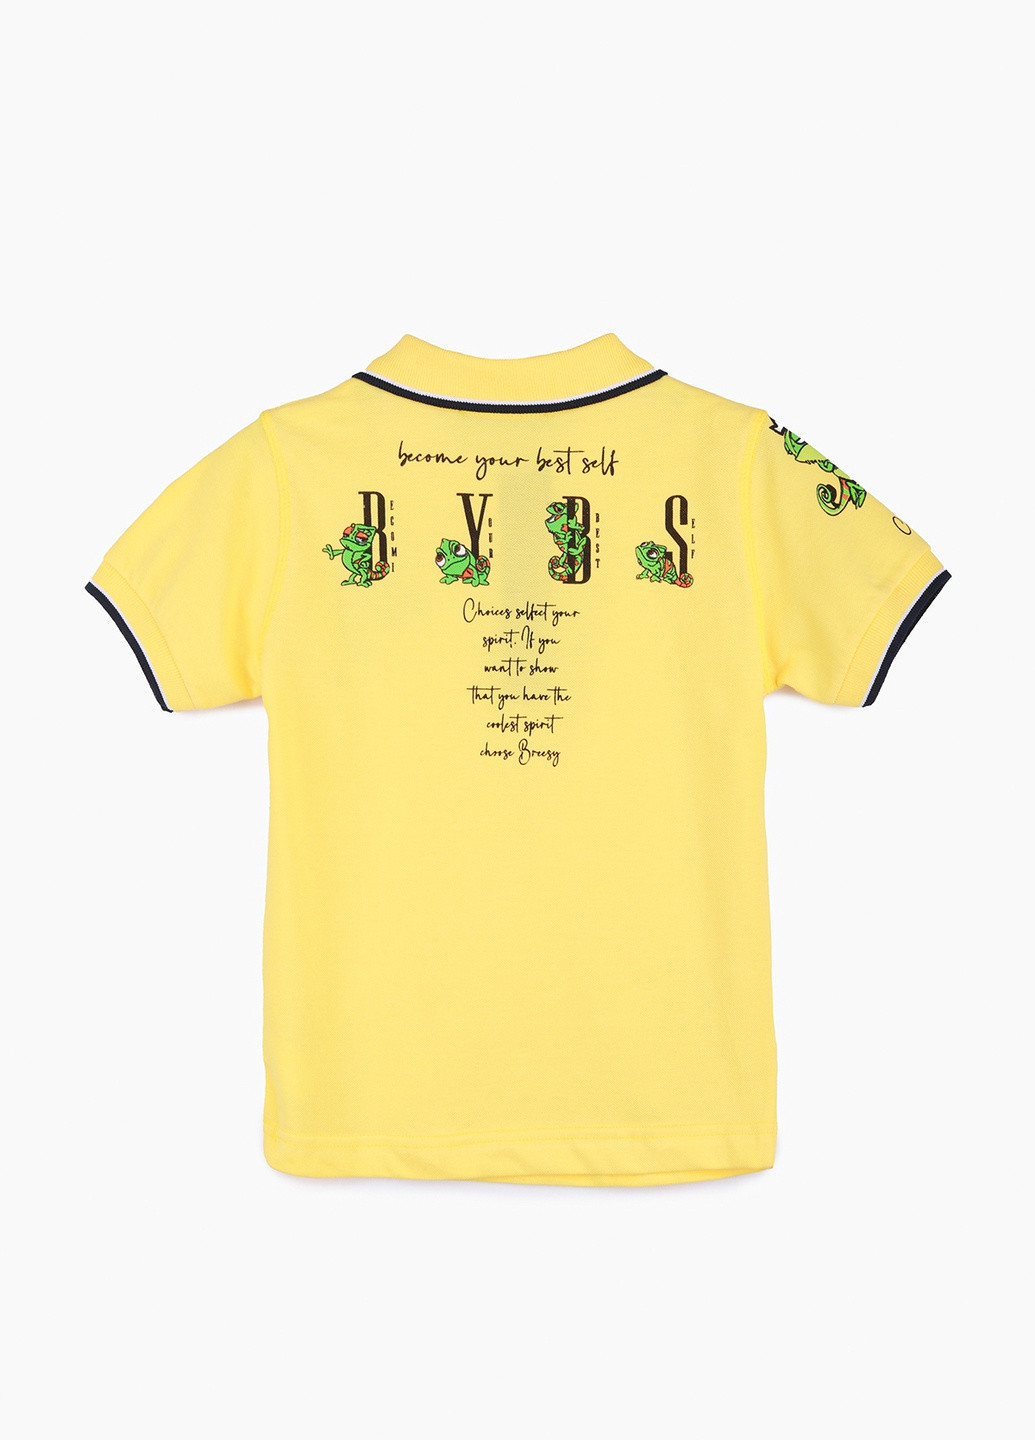 Желтая детская футболка-поло для мальчика Popito однотонная